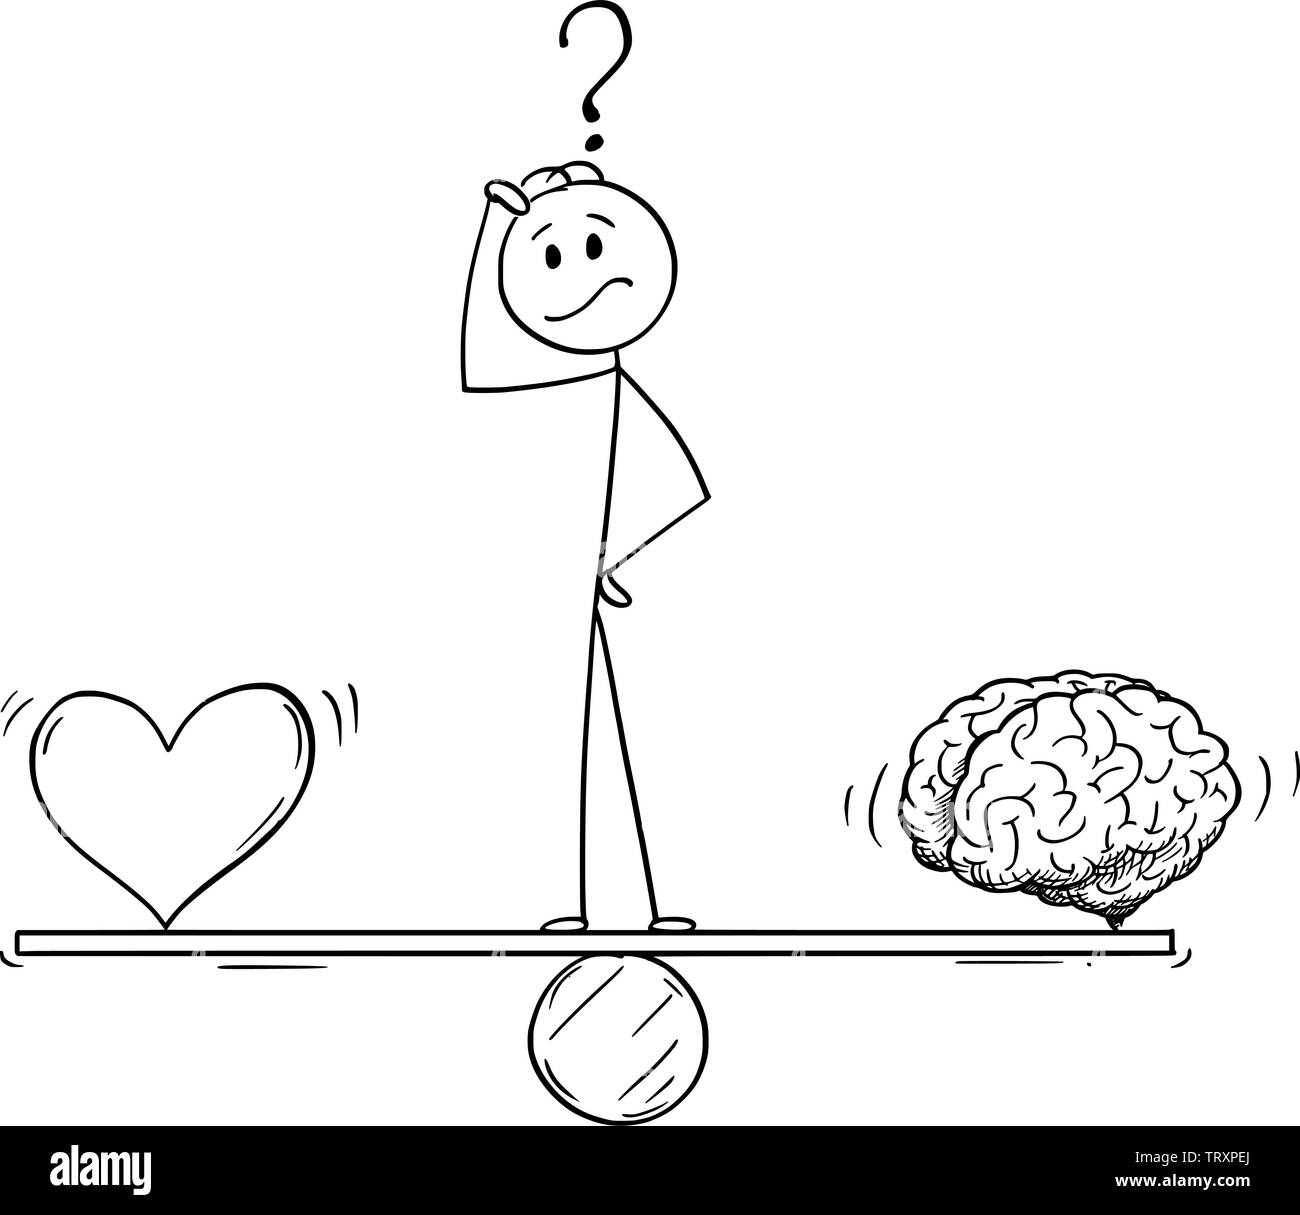 Vector cartoon stick figure dessin illustration conceptuelle de l'homme ou Homme pensant et debout sur la balançoire et équilibrage du cœur et du cerveau comme l'émotion et la logique la métaphore. Illustration de Vecteur